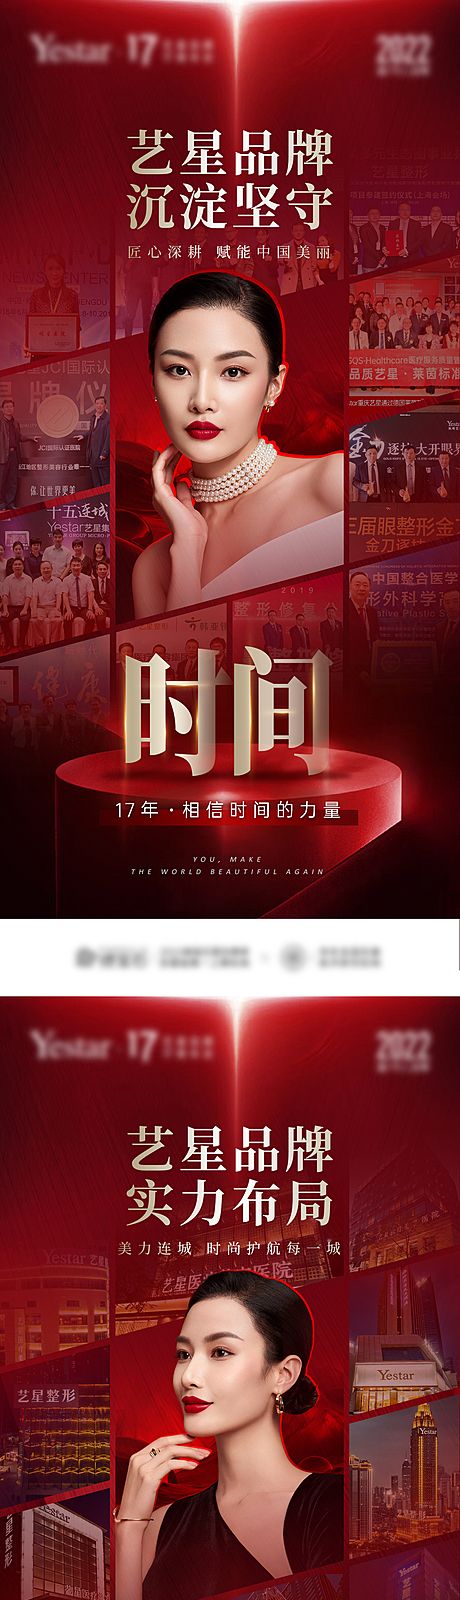 仙图网-医美周年庆品牌宣传合集大事记照片墙